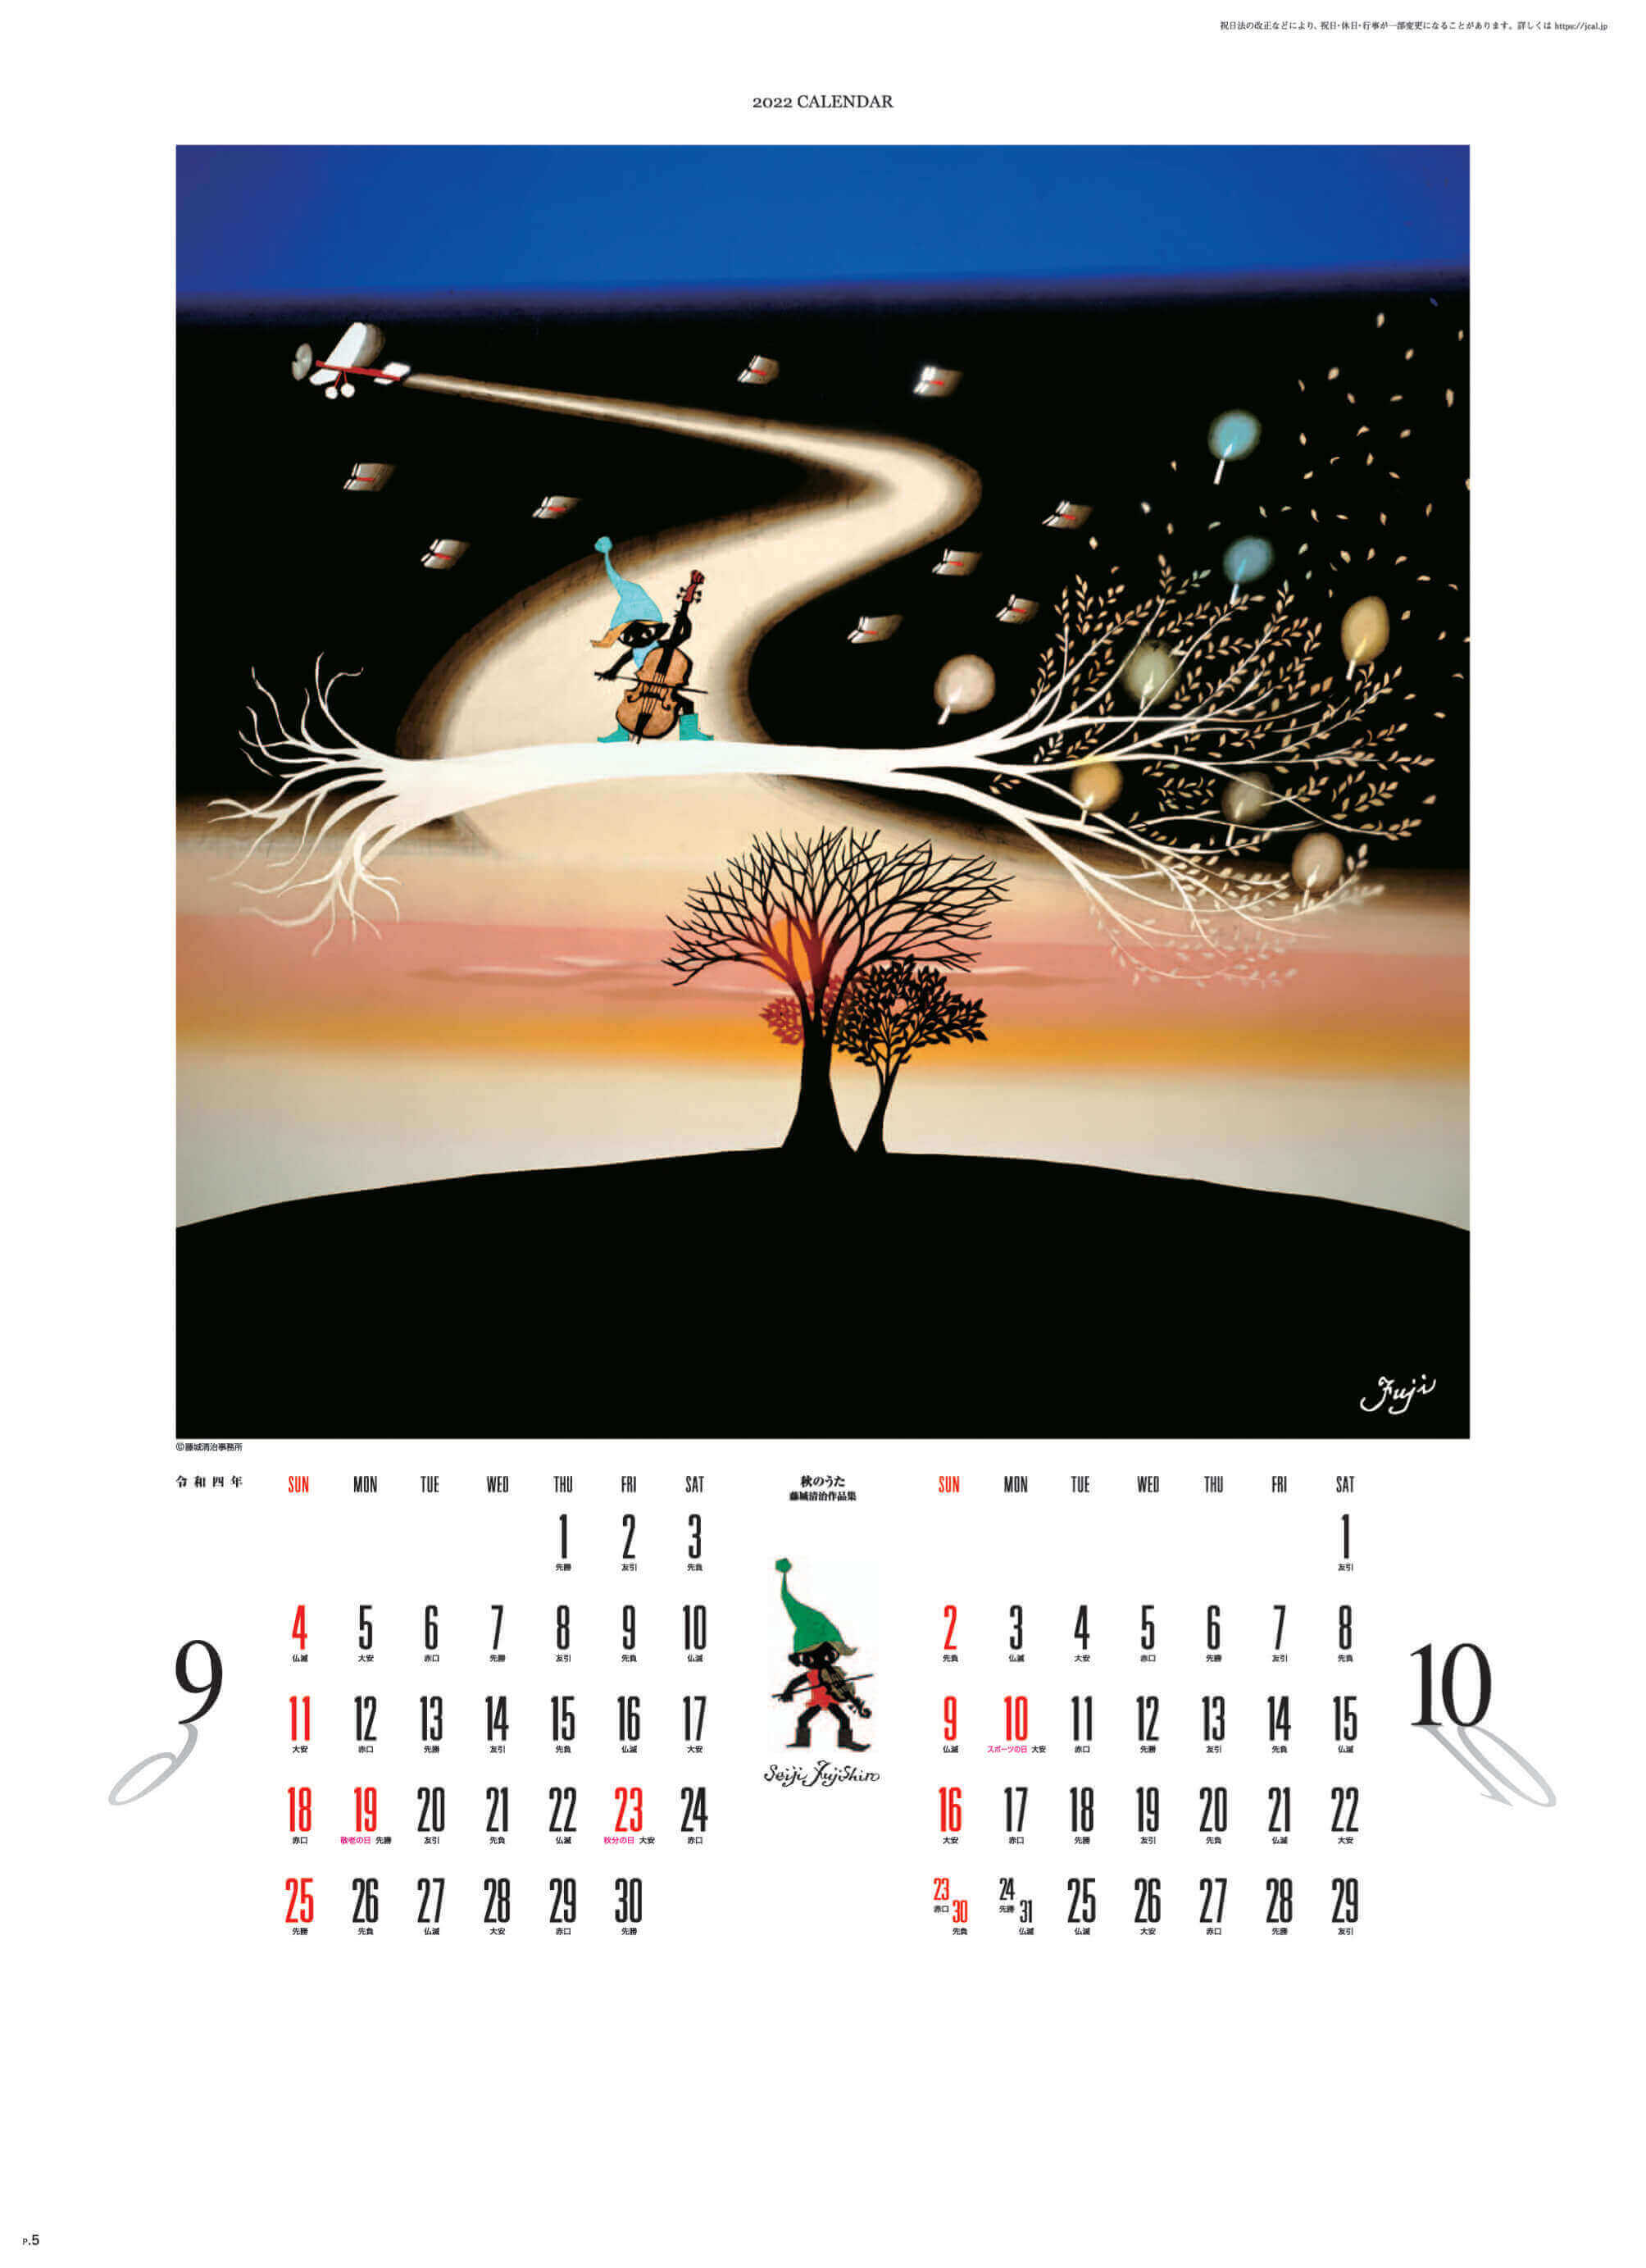 9-10月 秋のうた 遠い日の風景から(影絵) 藤城清治 2022年カレンダーの画像